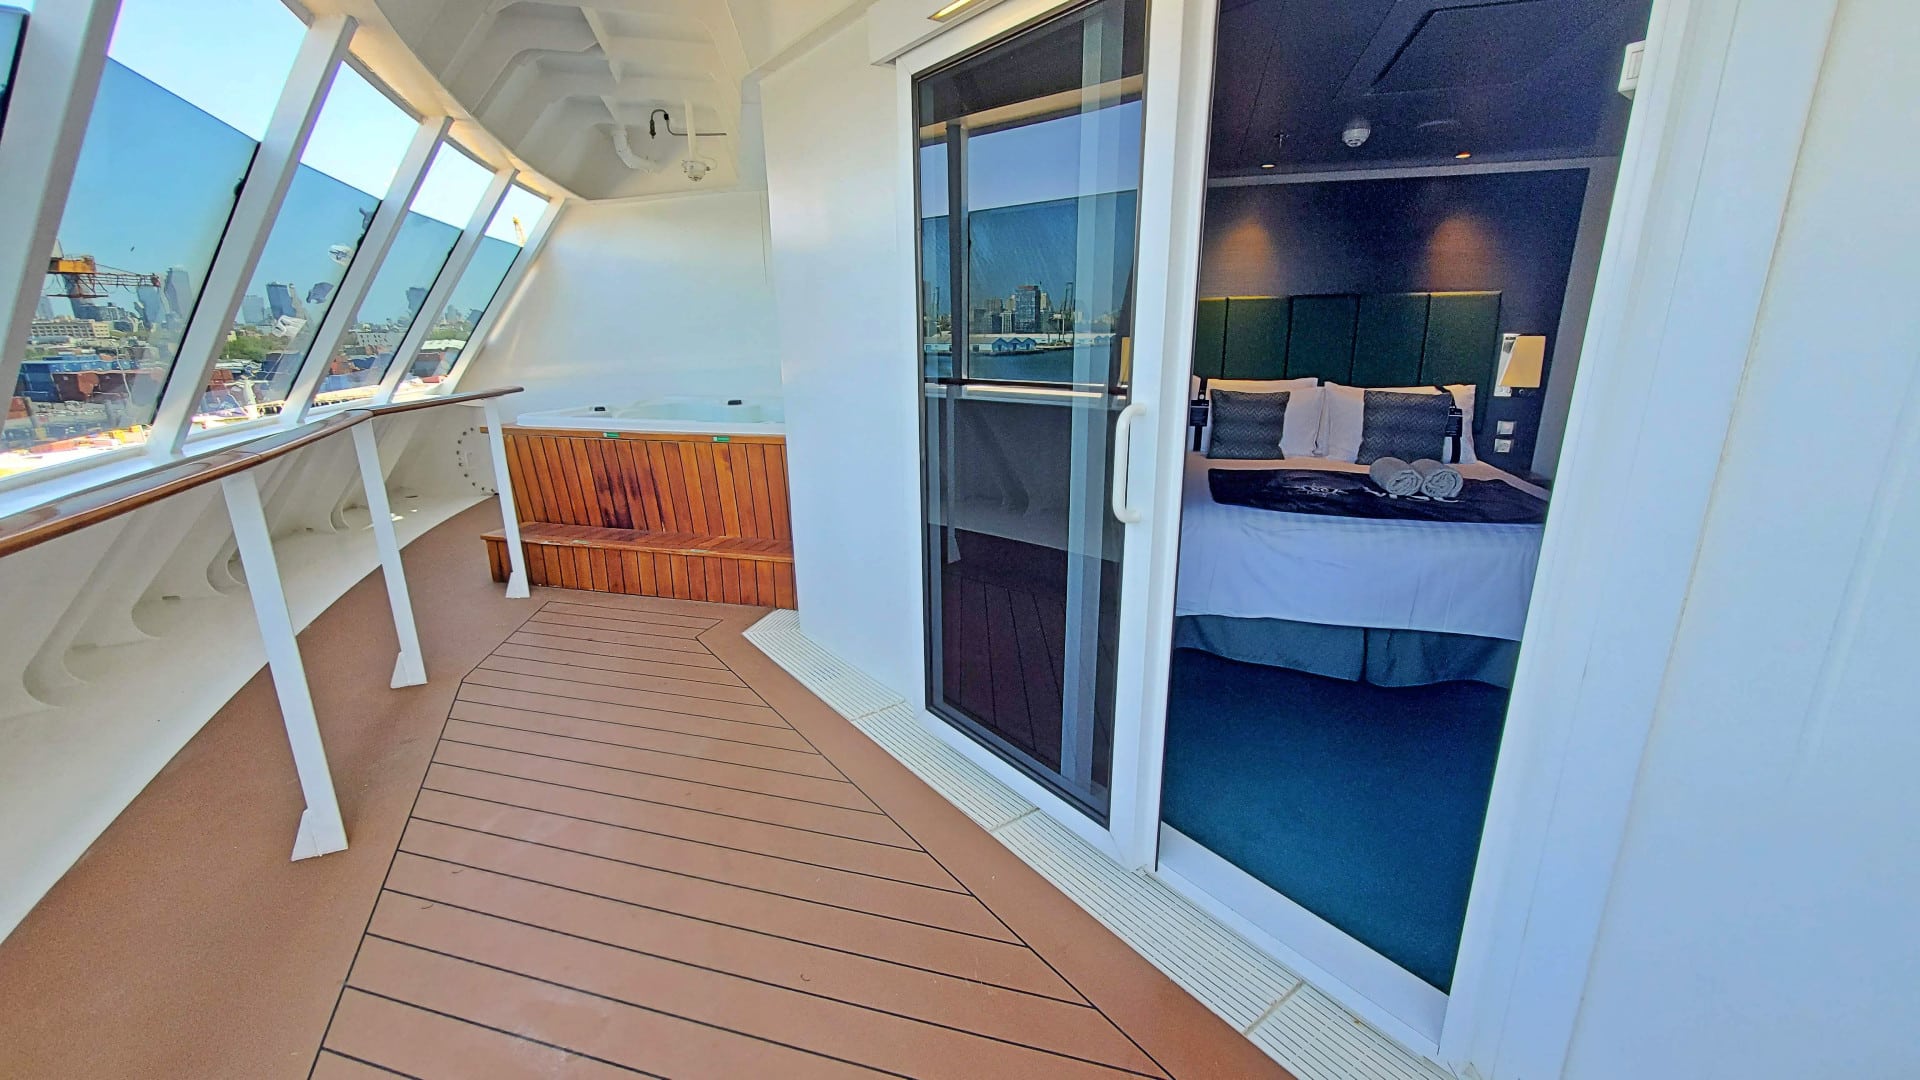 Suite cabin on MSC cruise ship Meraviglia